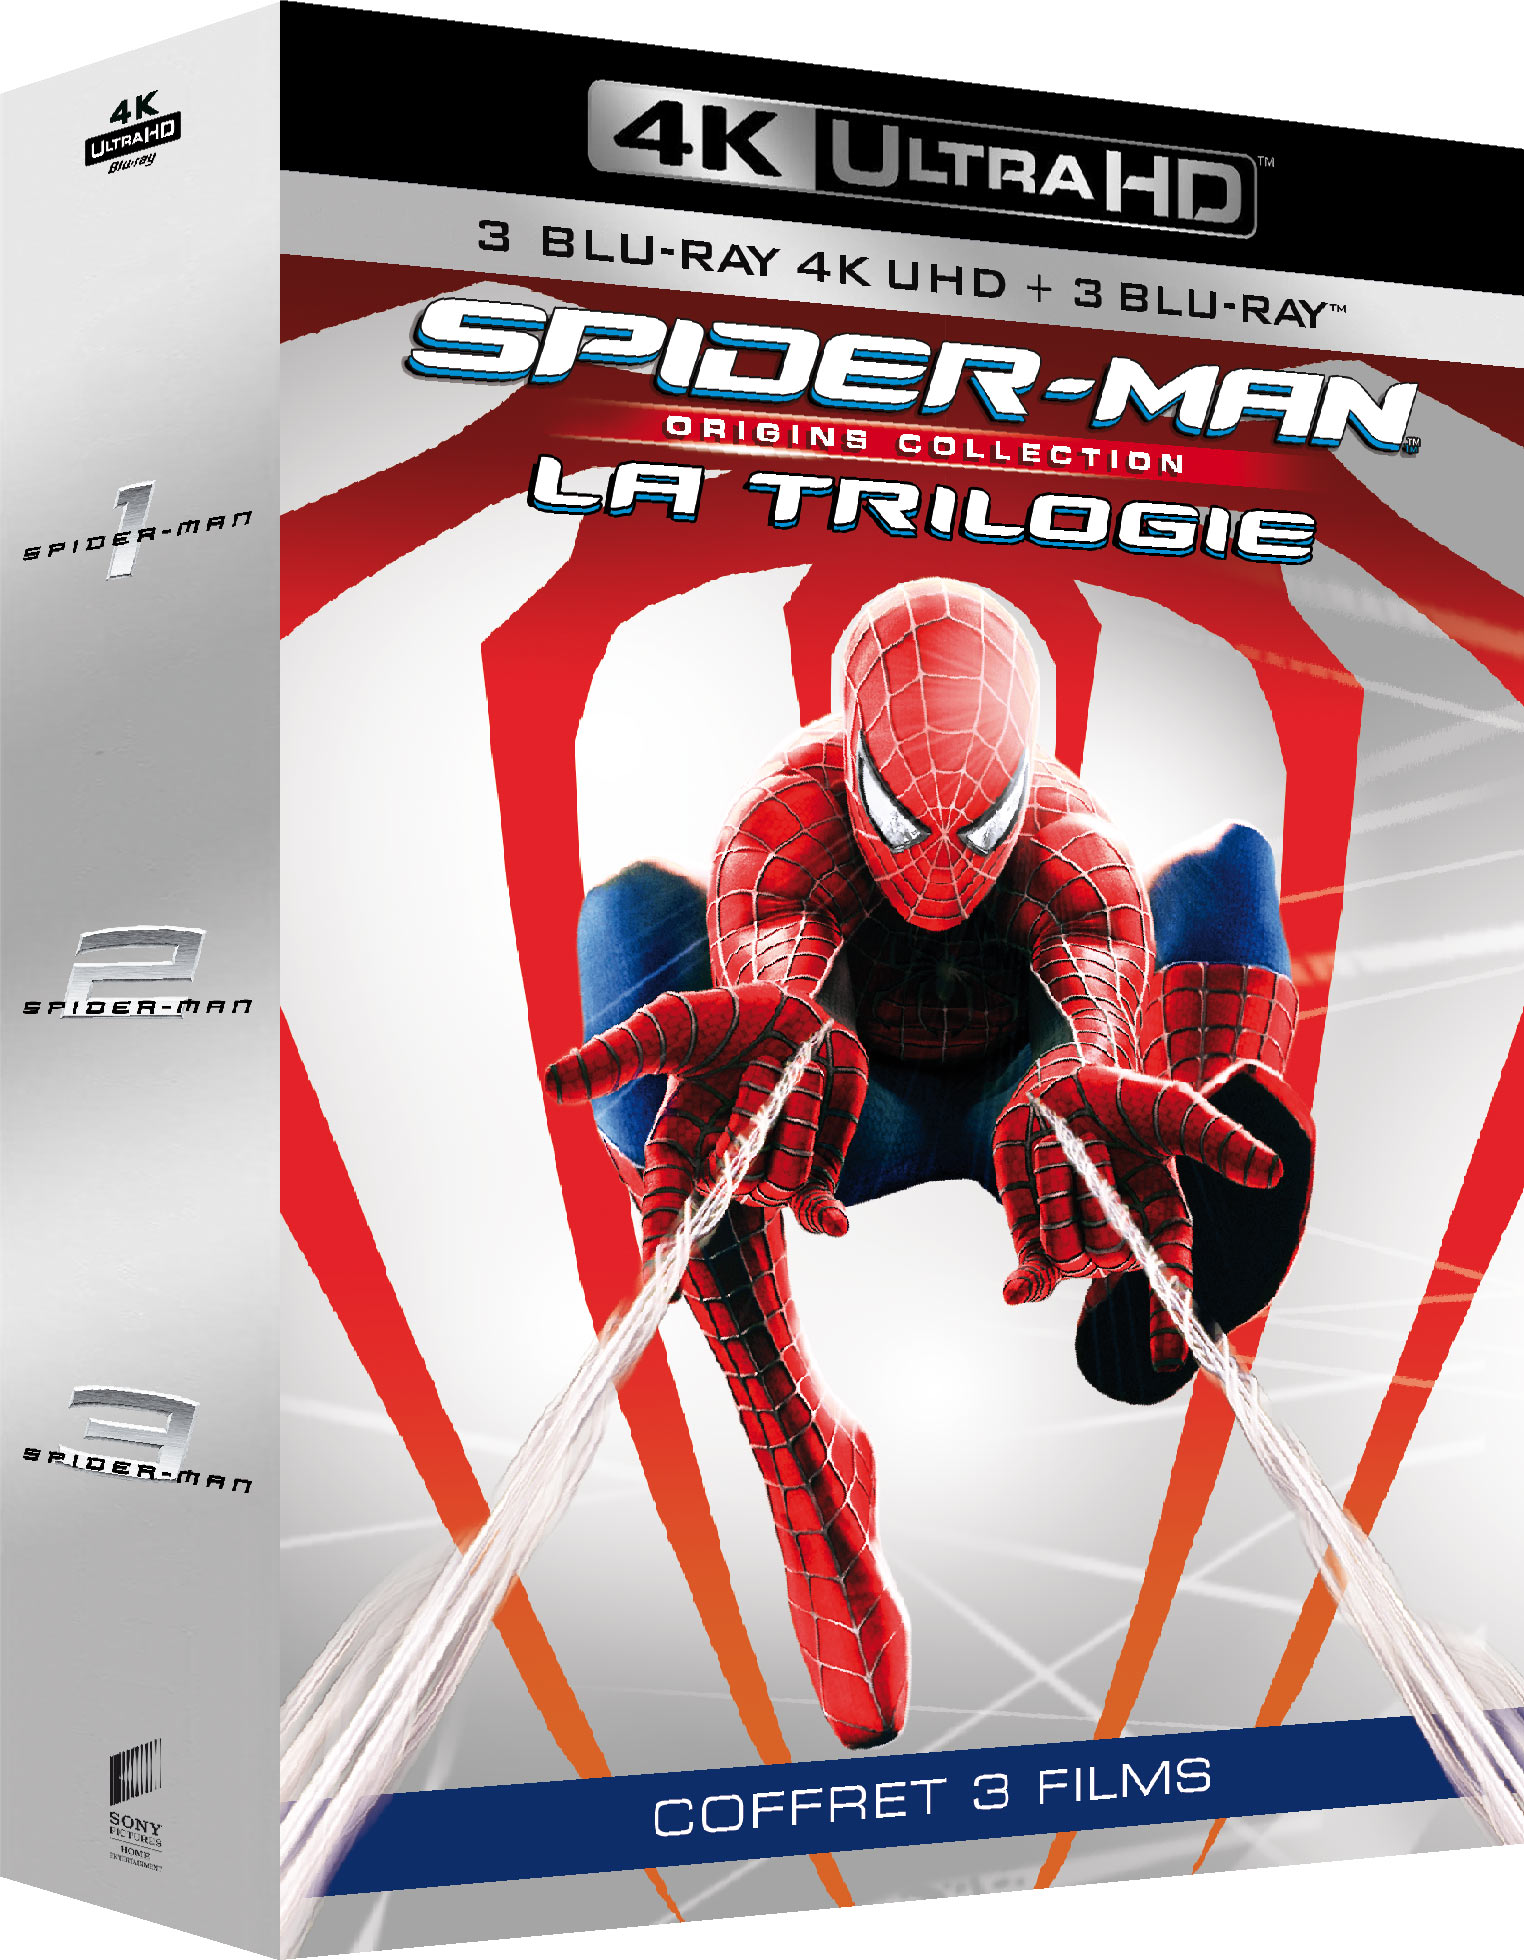 SPIDER-MAN ORIGINS - TRILOGIE - 3 BD UHD 4K + 3 BD